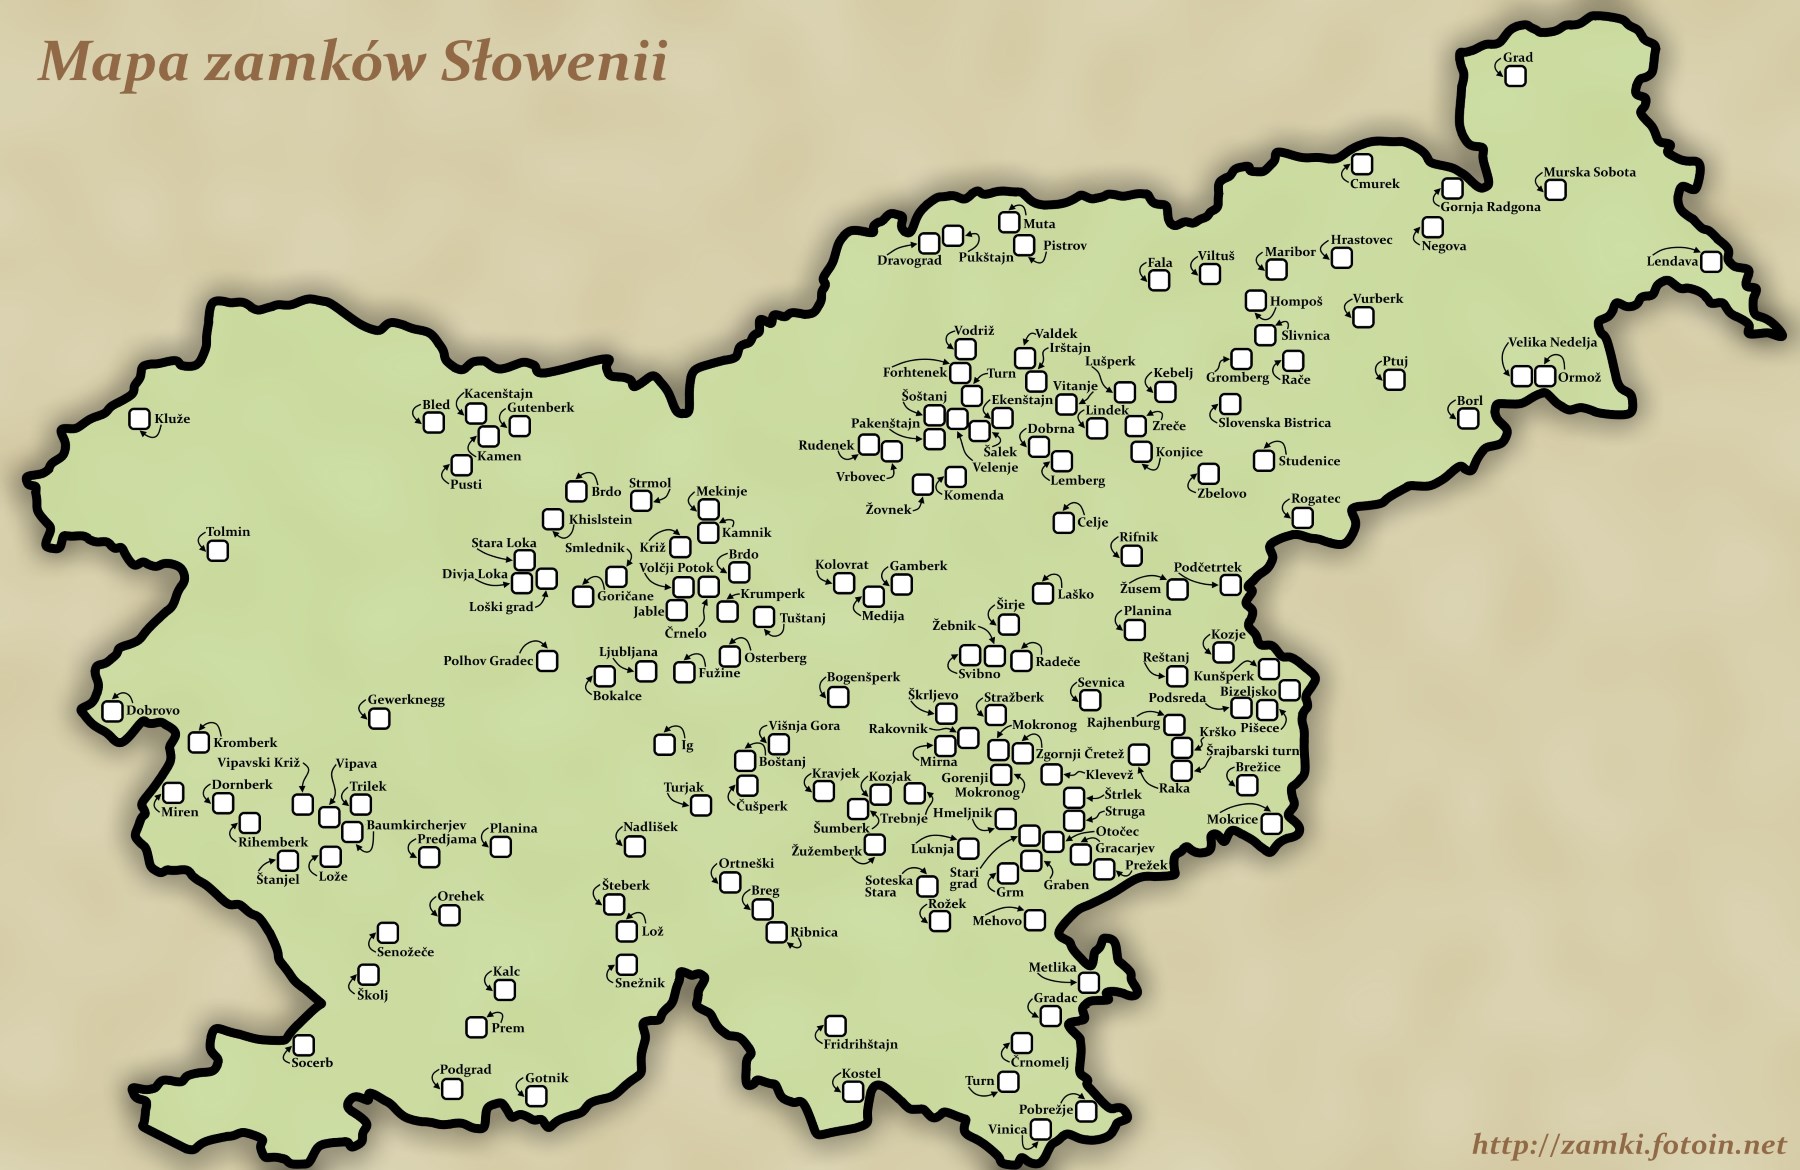 Mapa zamków Słowenii